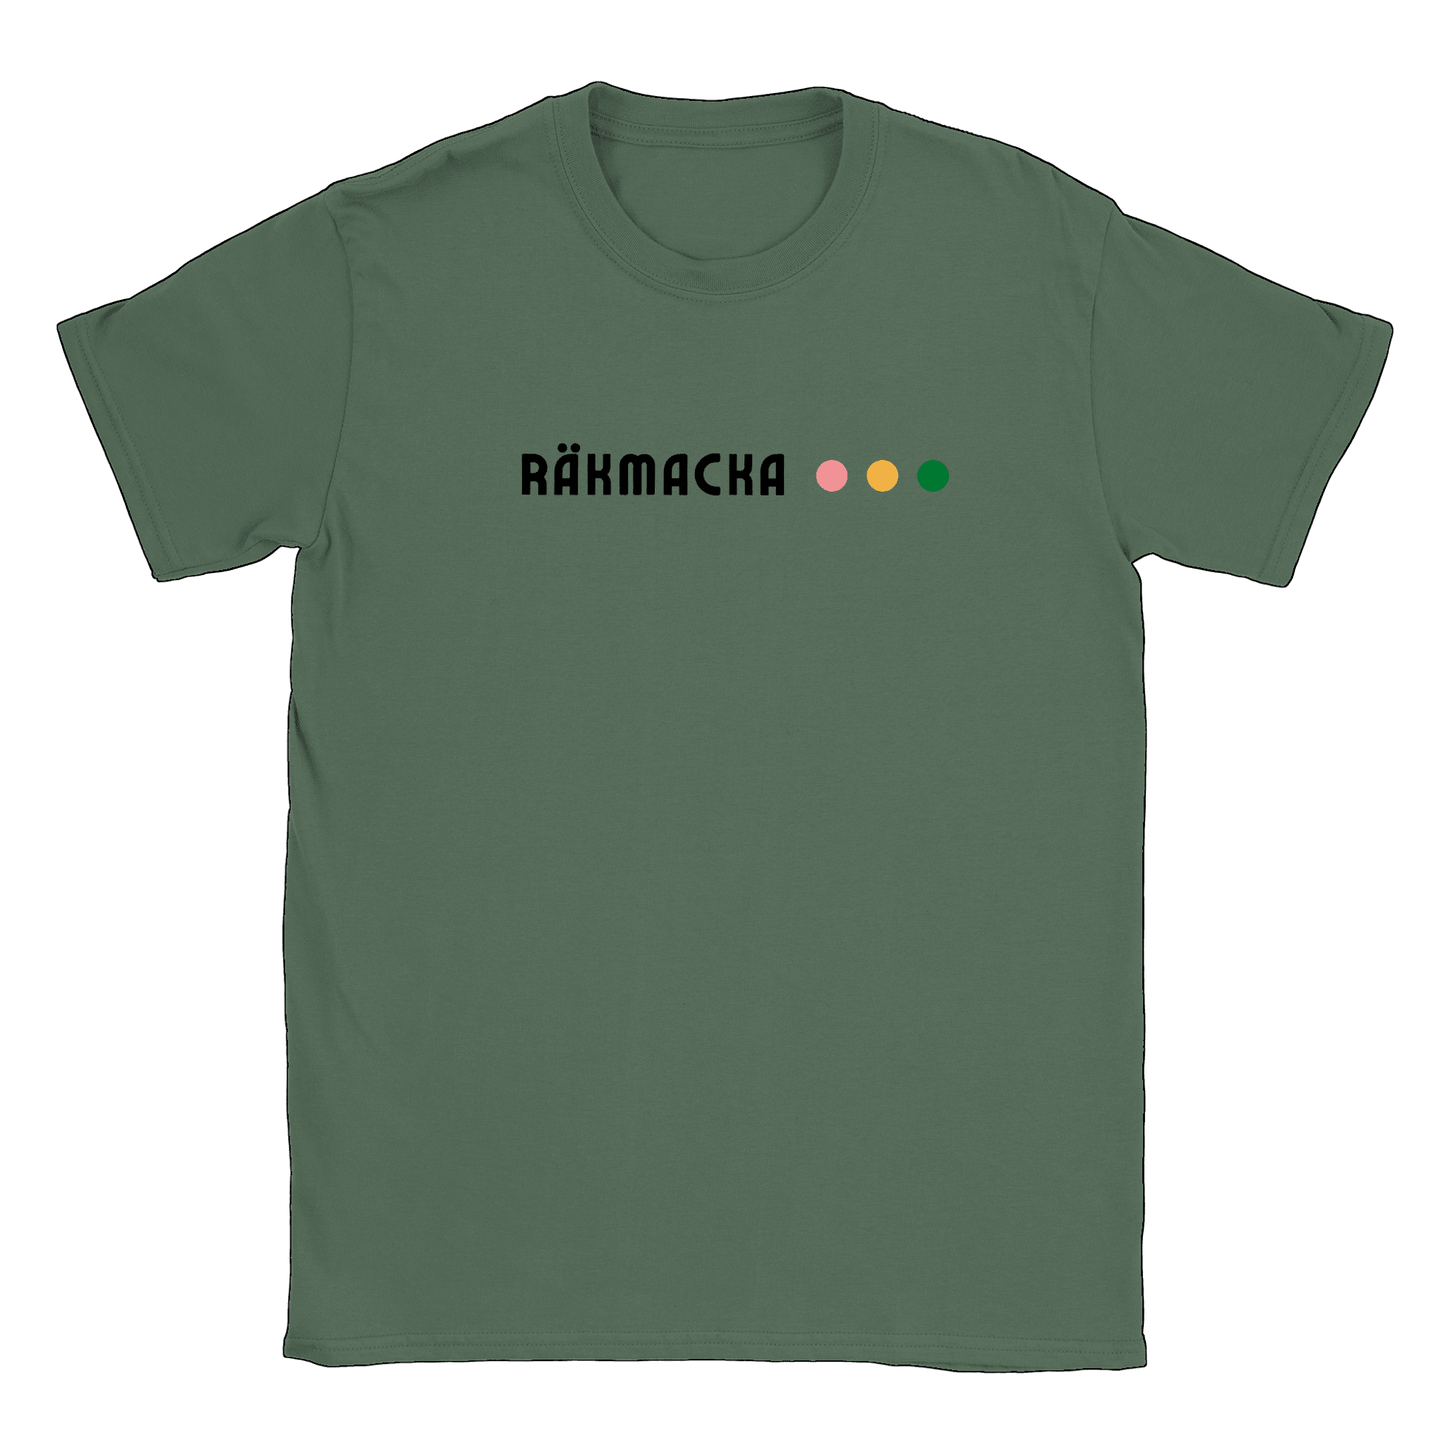 Räkmacka - T-shirt Militärgrön